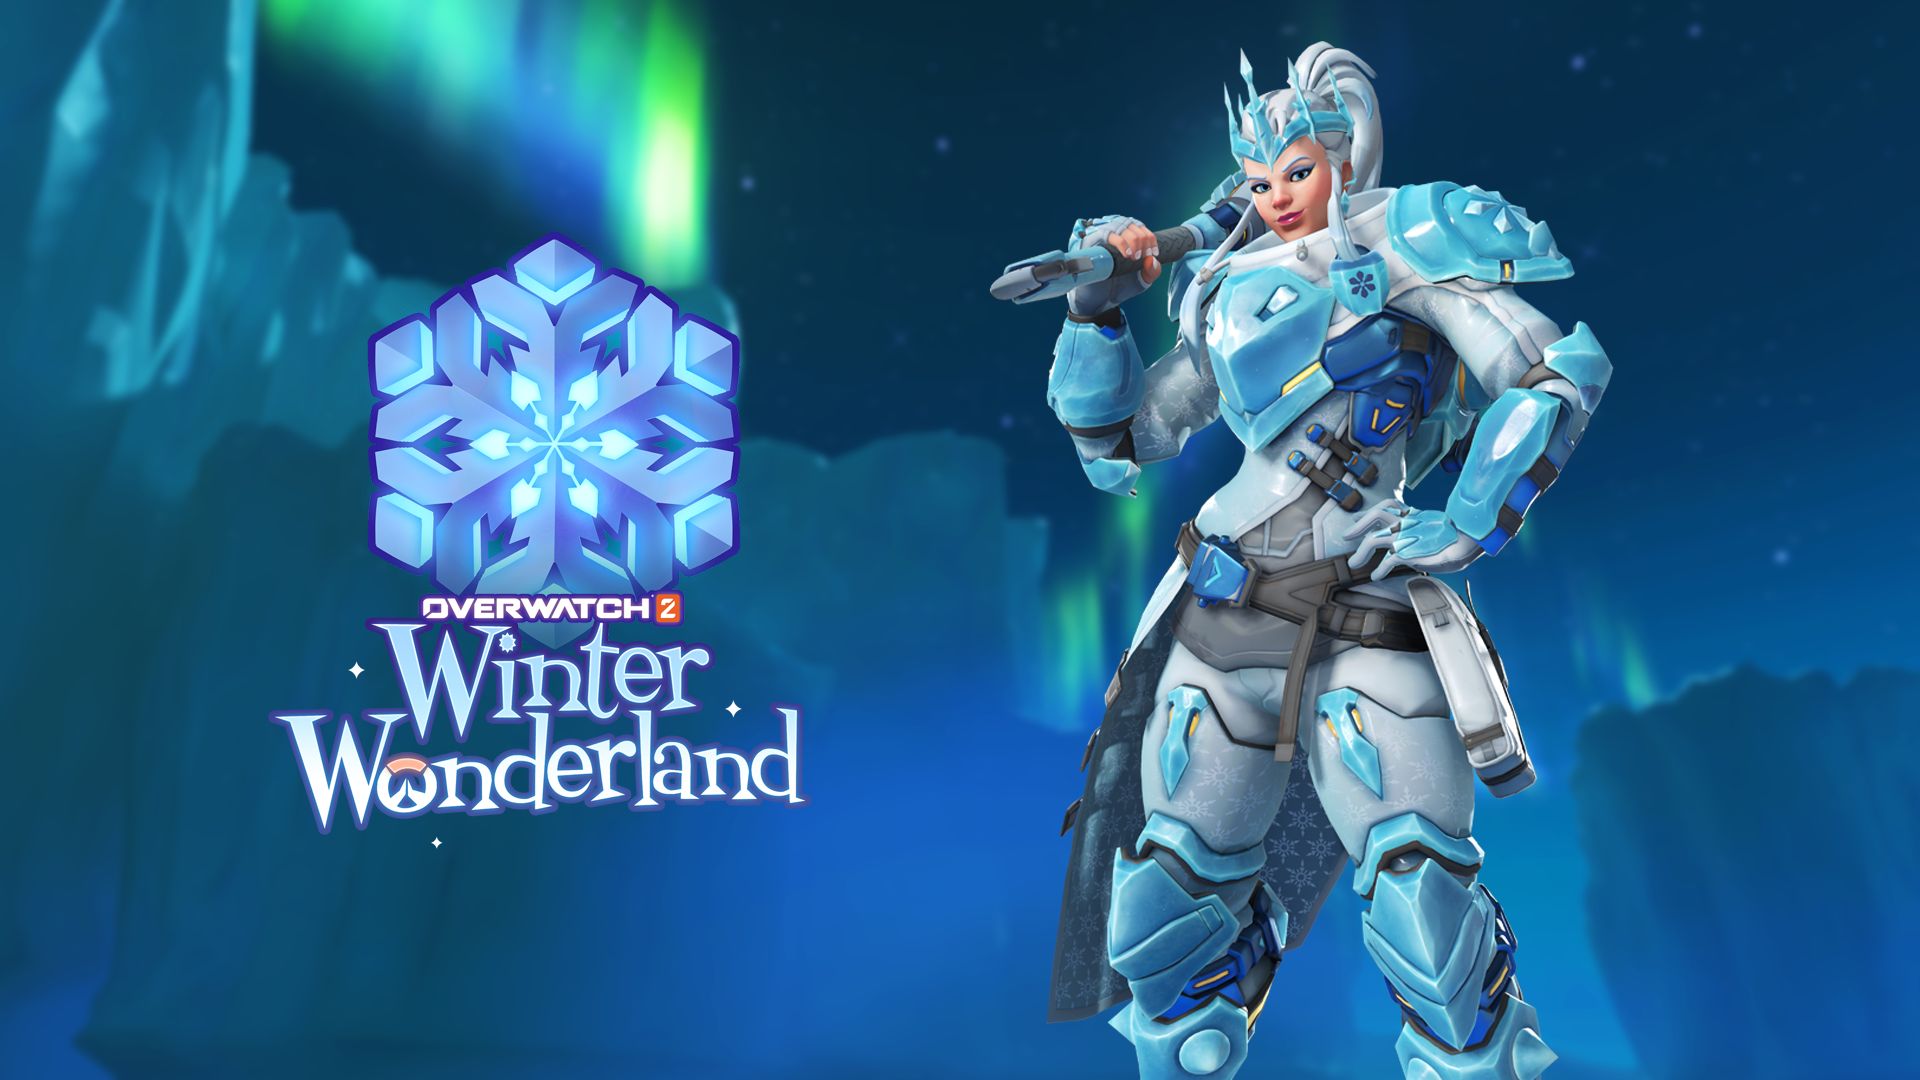 Overwatch 2 - Winter Wonderland Event 2022